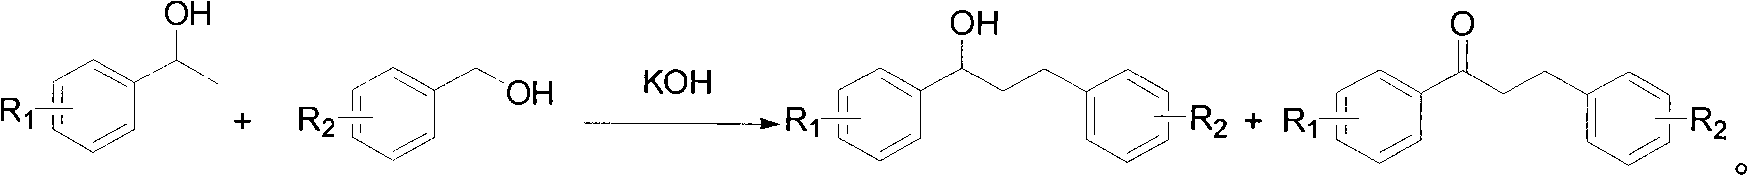 Montelukast sodium intermediate and method for synthesizing montelukast sodium thereof